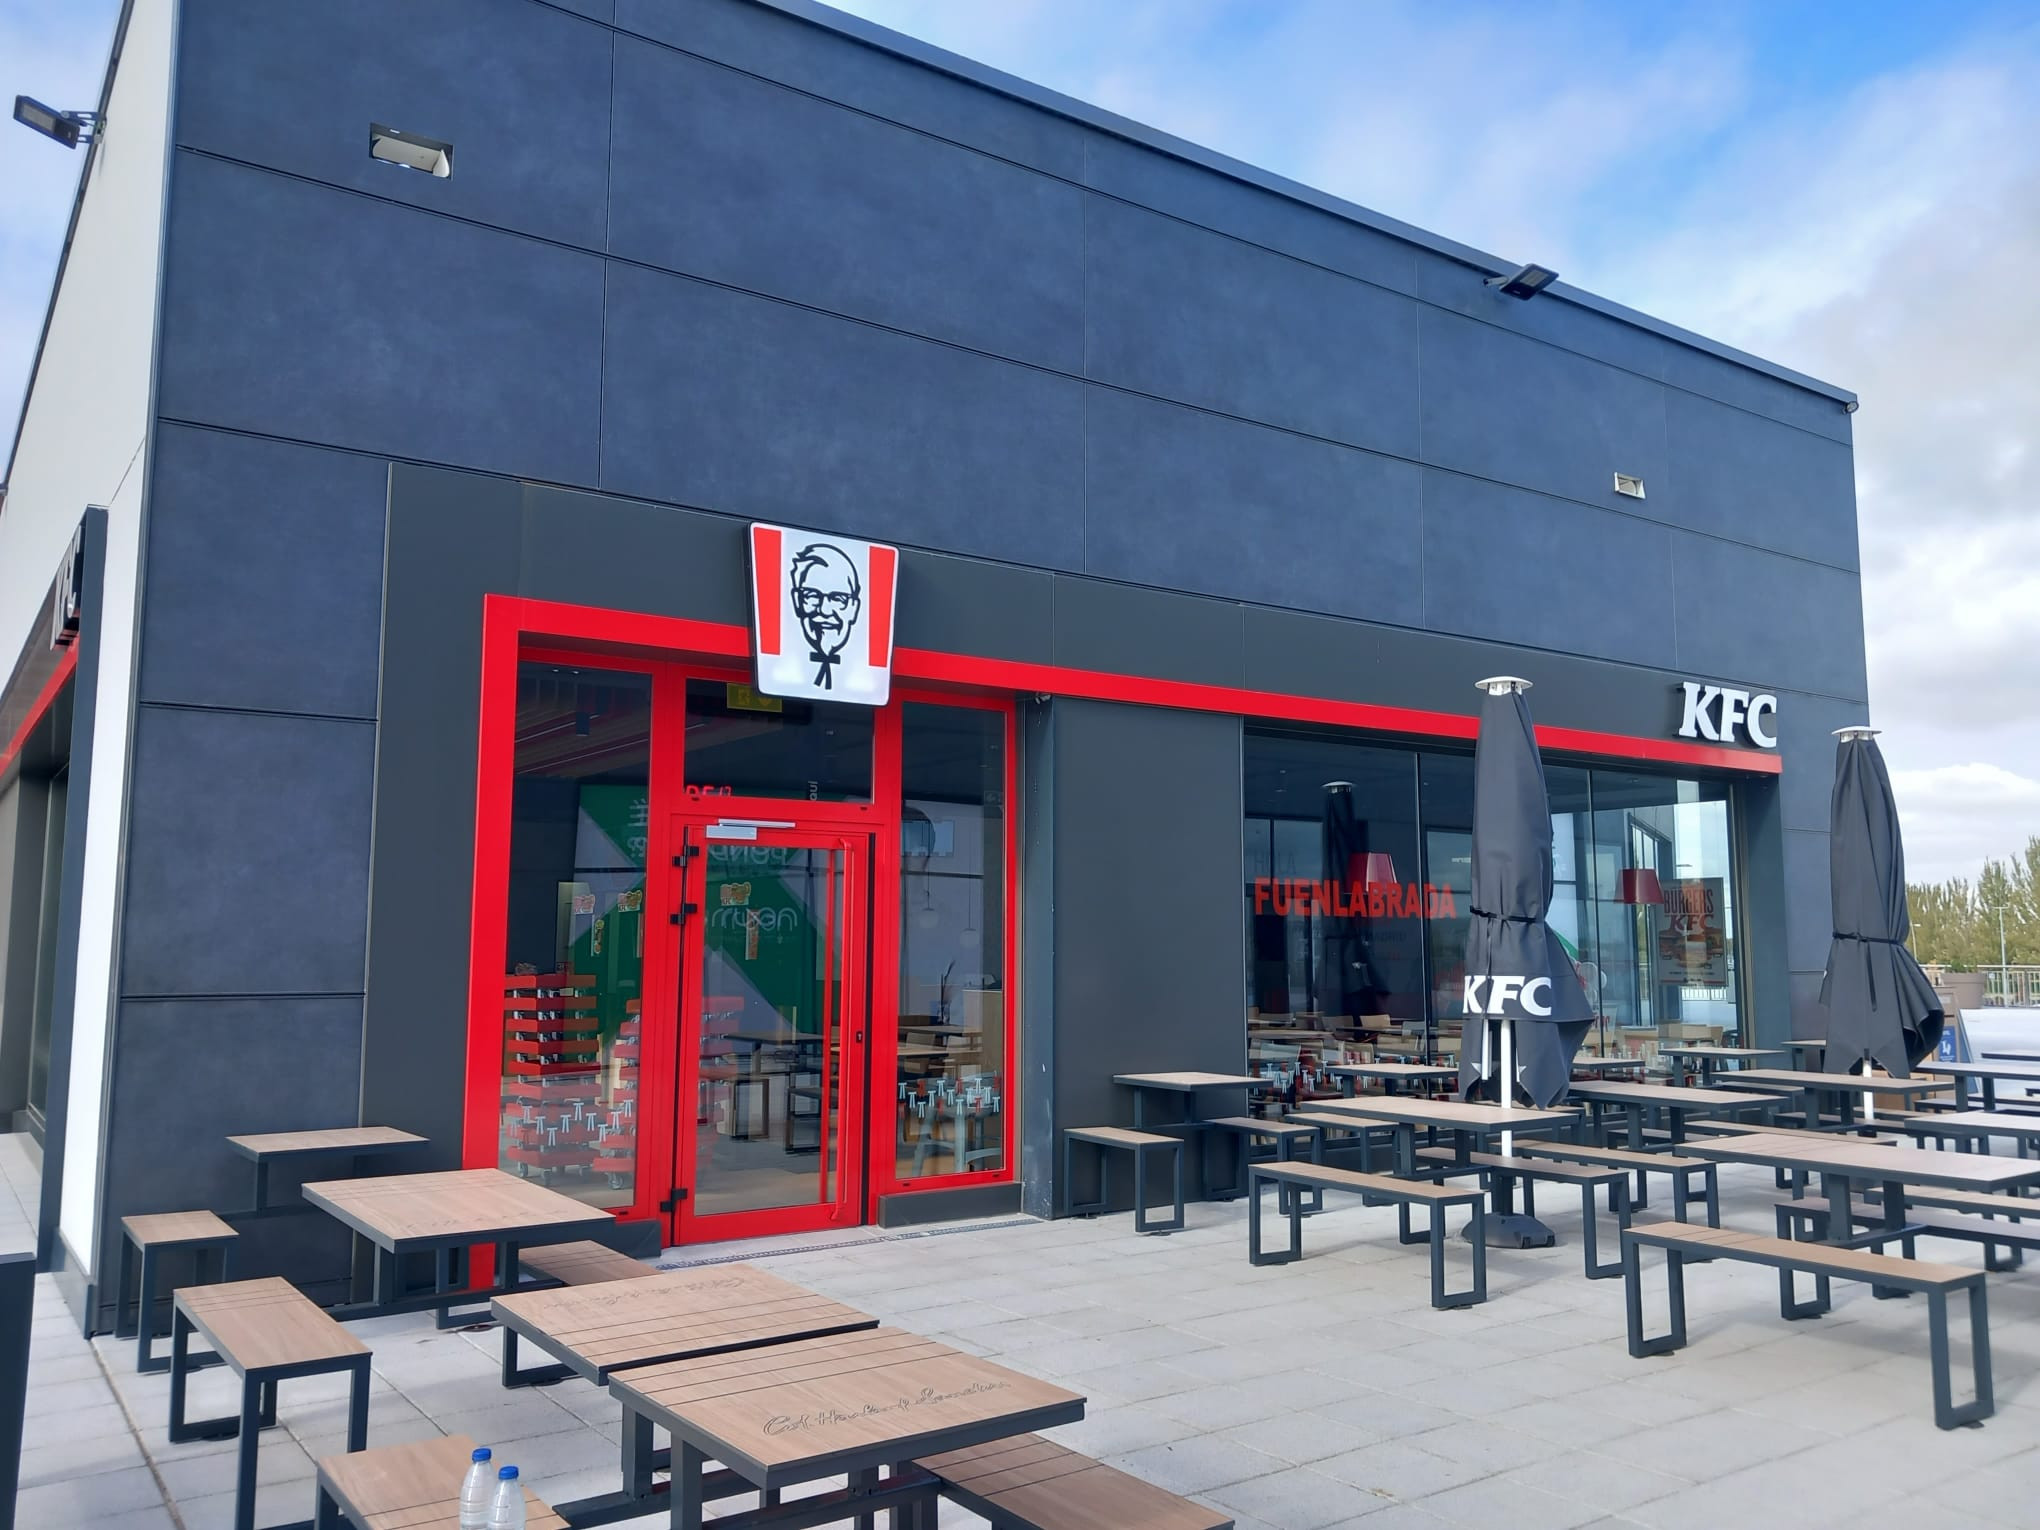 KFC abre sus puertas en el nuevo centro comercial de Fuenlabrada, en Madrid